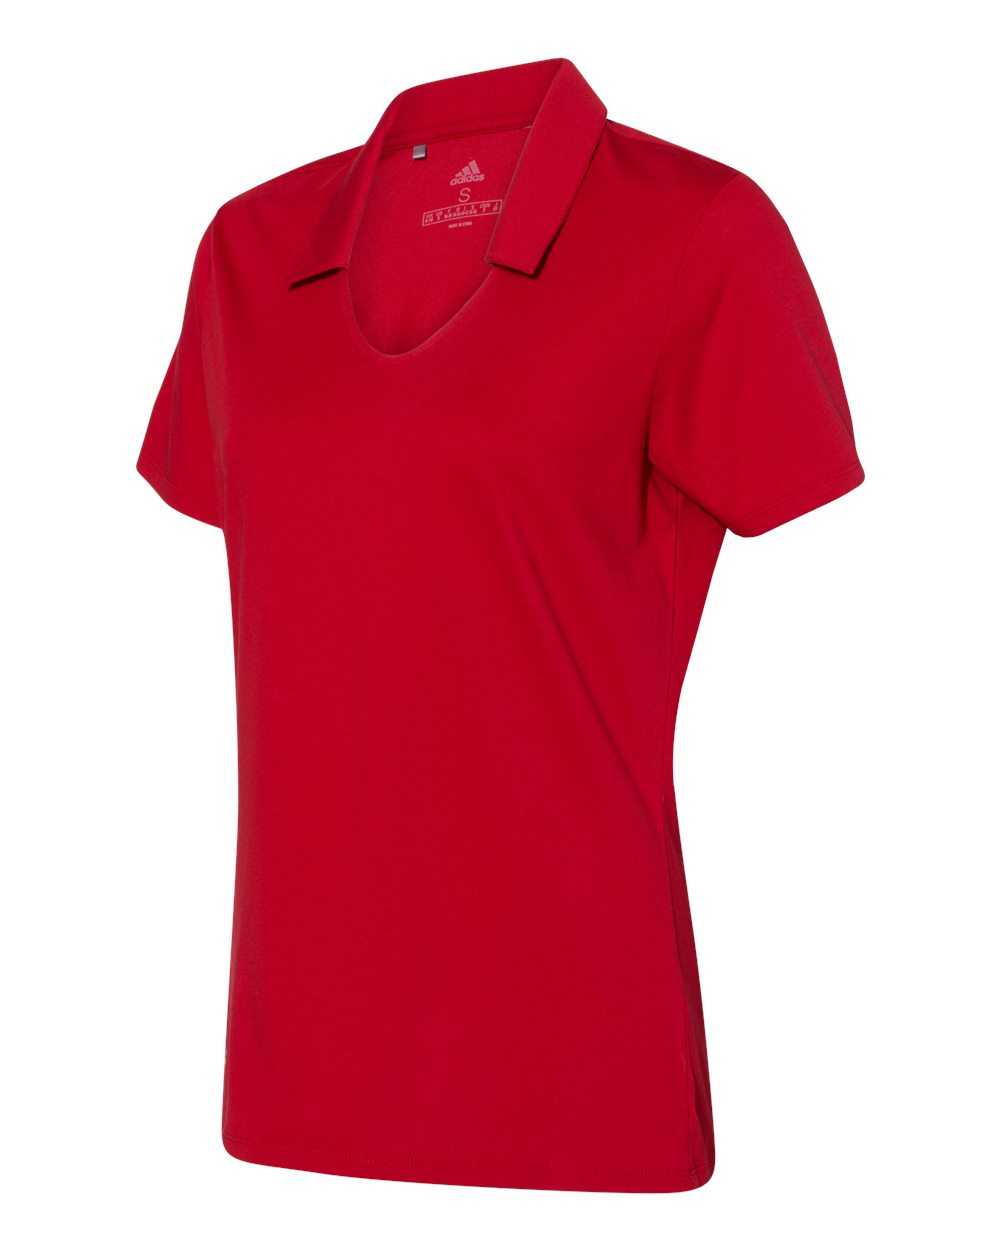 Adidas A323 Women's Cotton Blend Sport Shirt - Power Red - HIT a Double